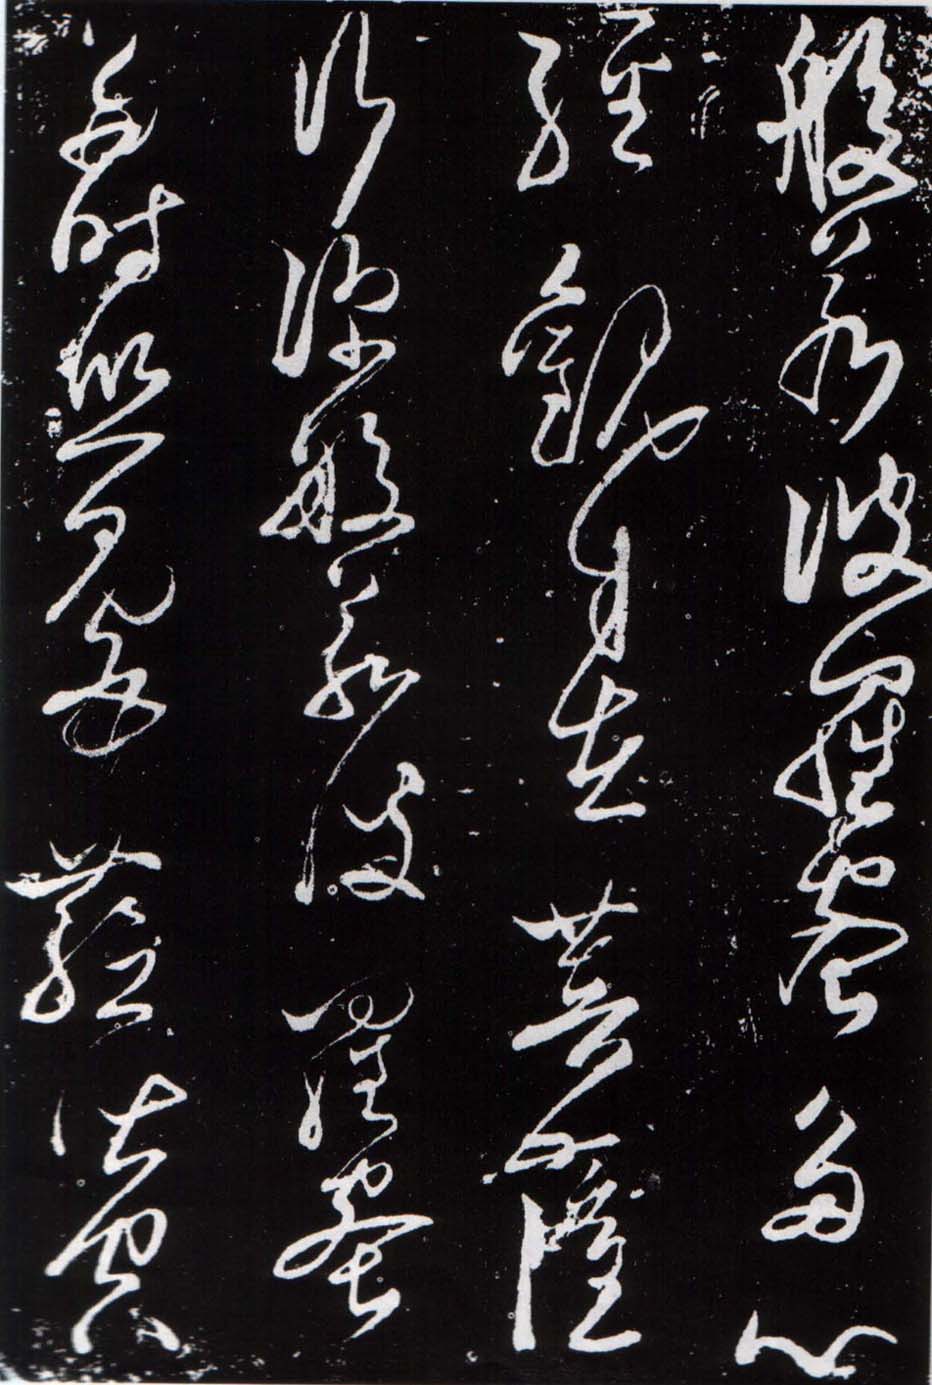 Образец письма "цао шу", китайские иероглифы